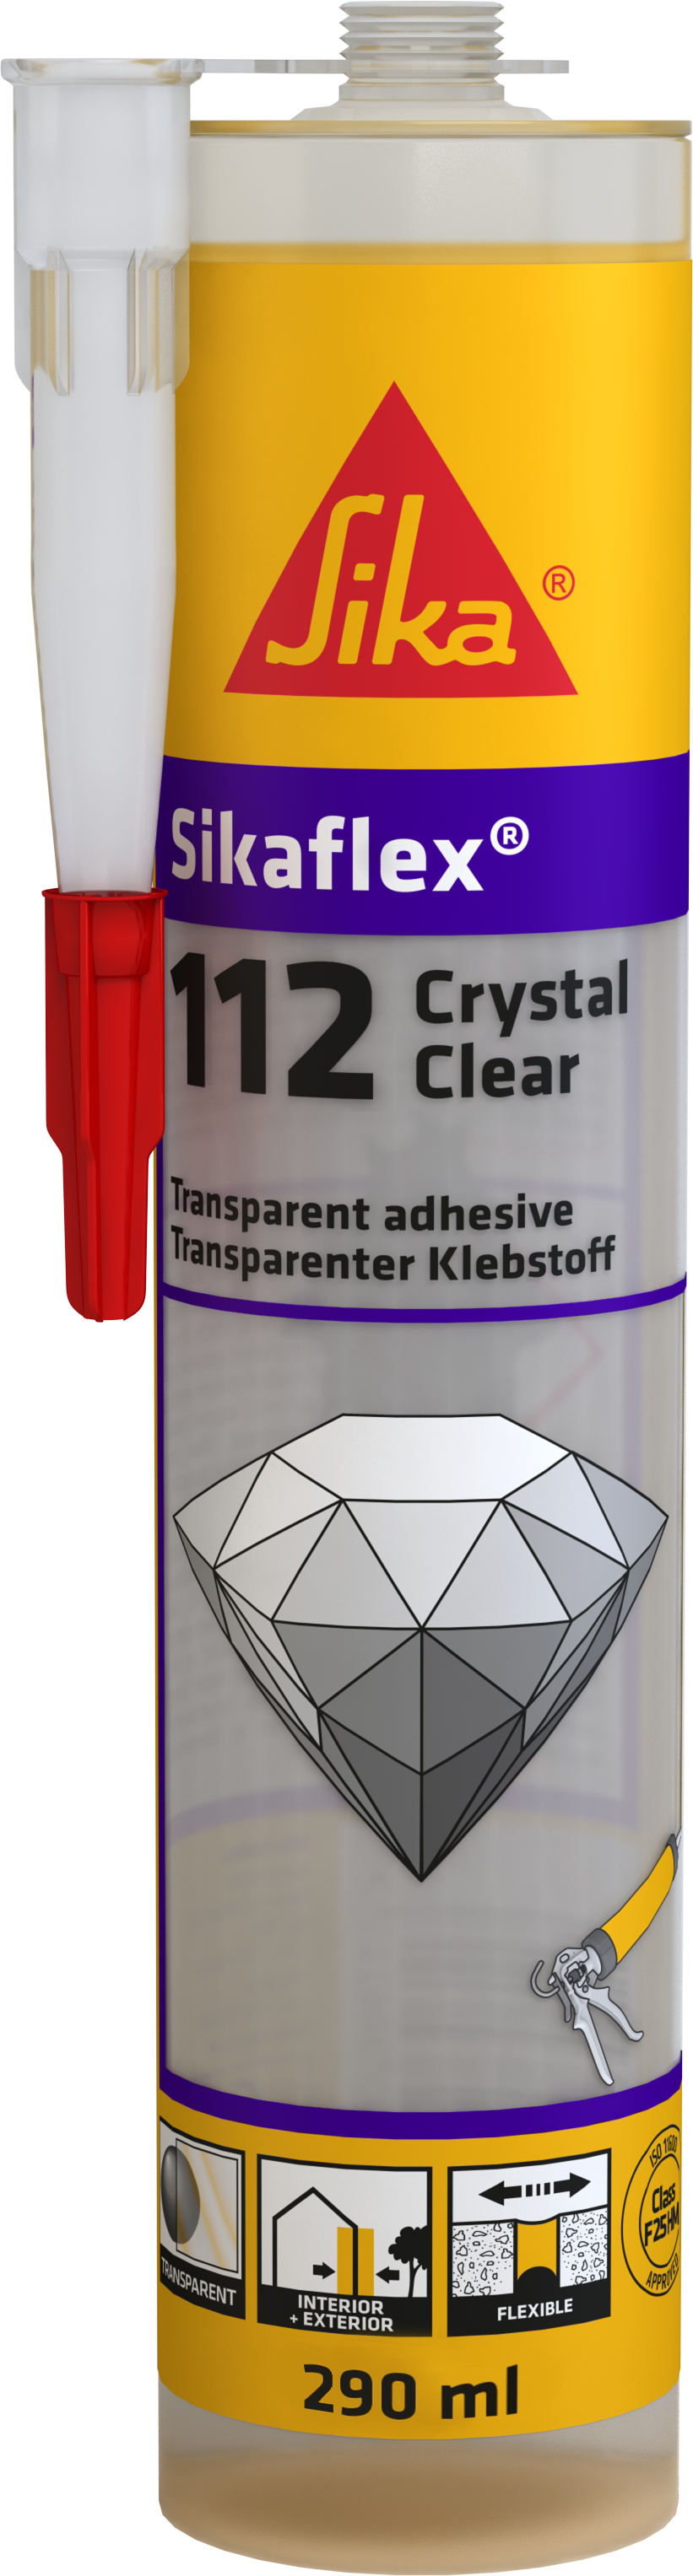 Mastic Sikaflex 112 Crystal Clear 290 mL - SIKA